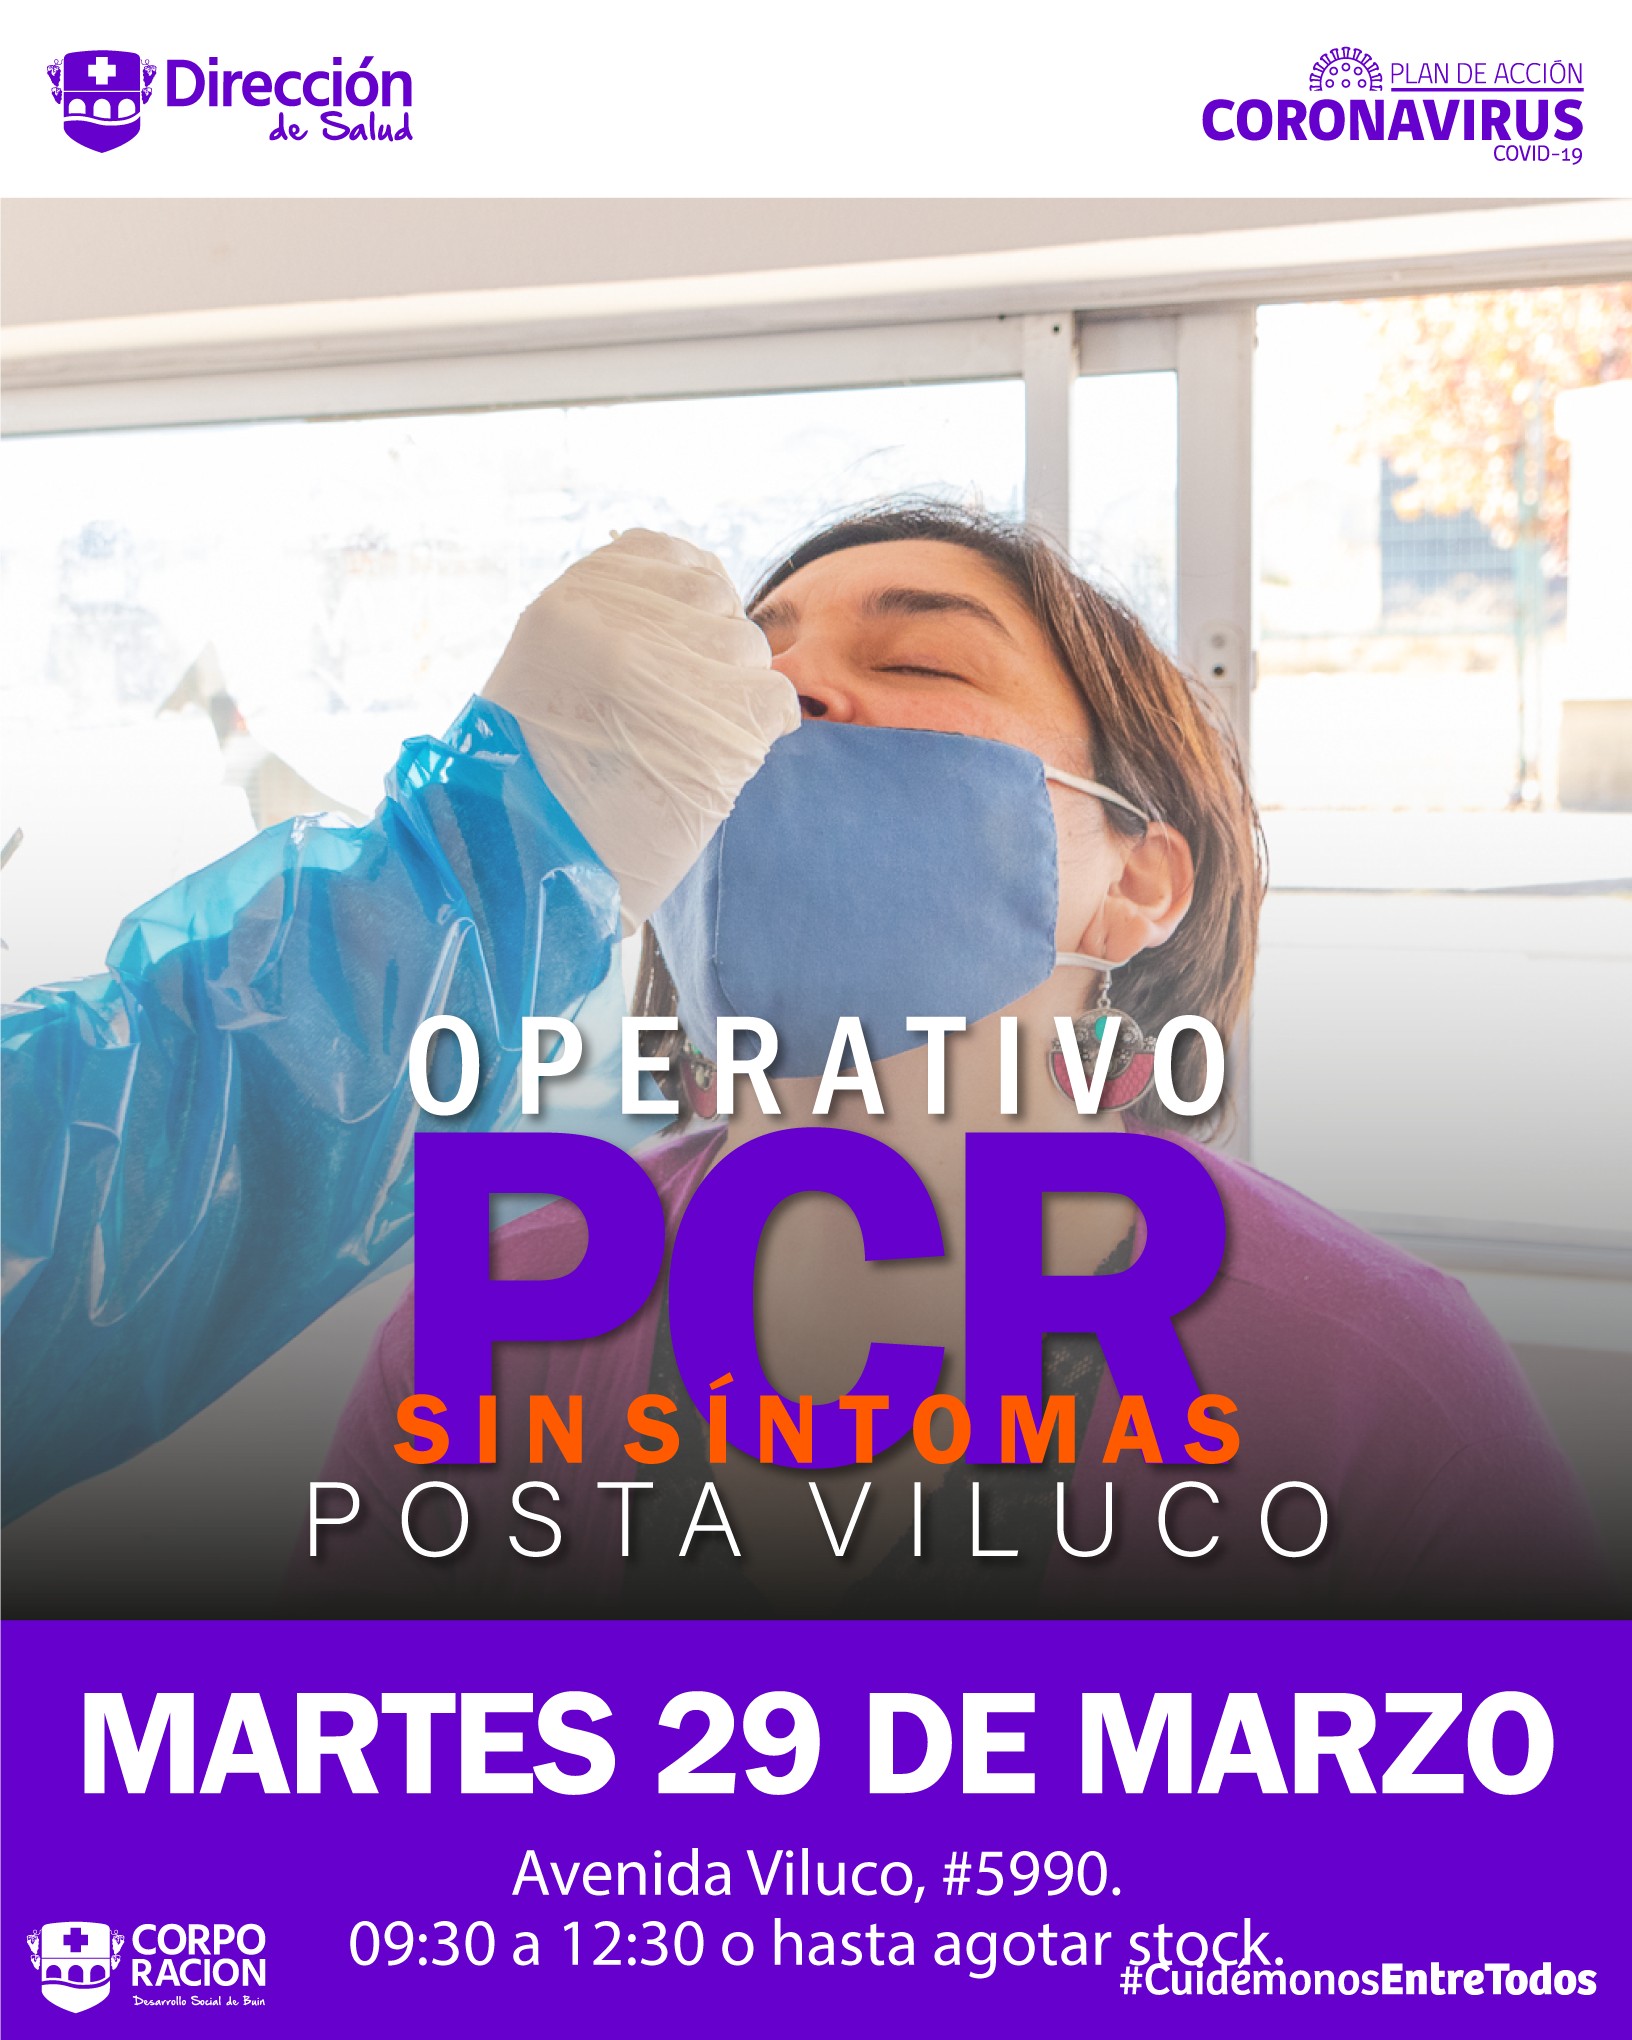 OPERATIVOS PCR: SEMANA DEL LUNES 28 DE MARZO AL VIERNES 01 DE ABRIL